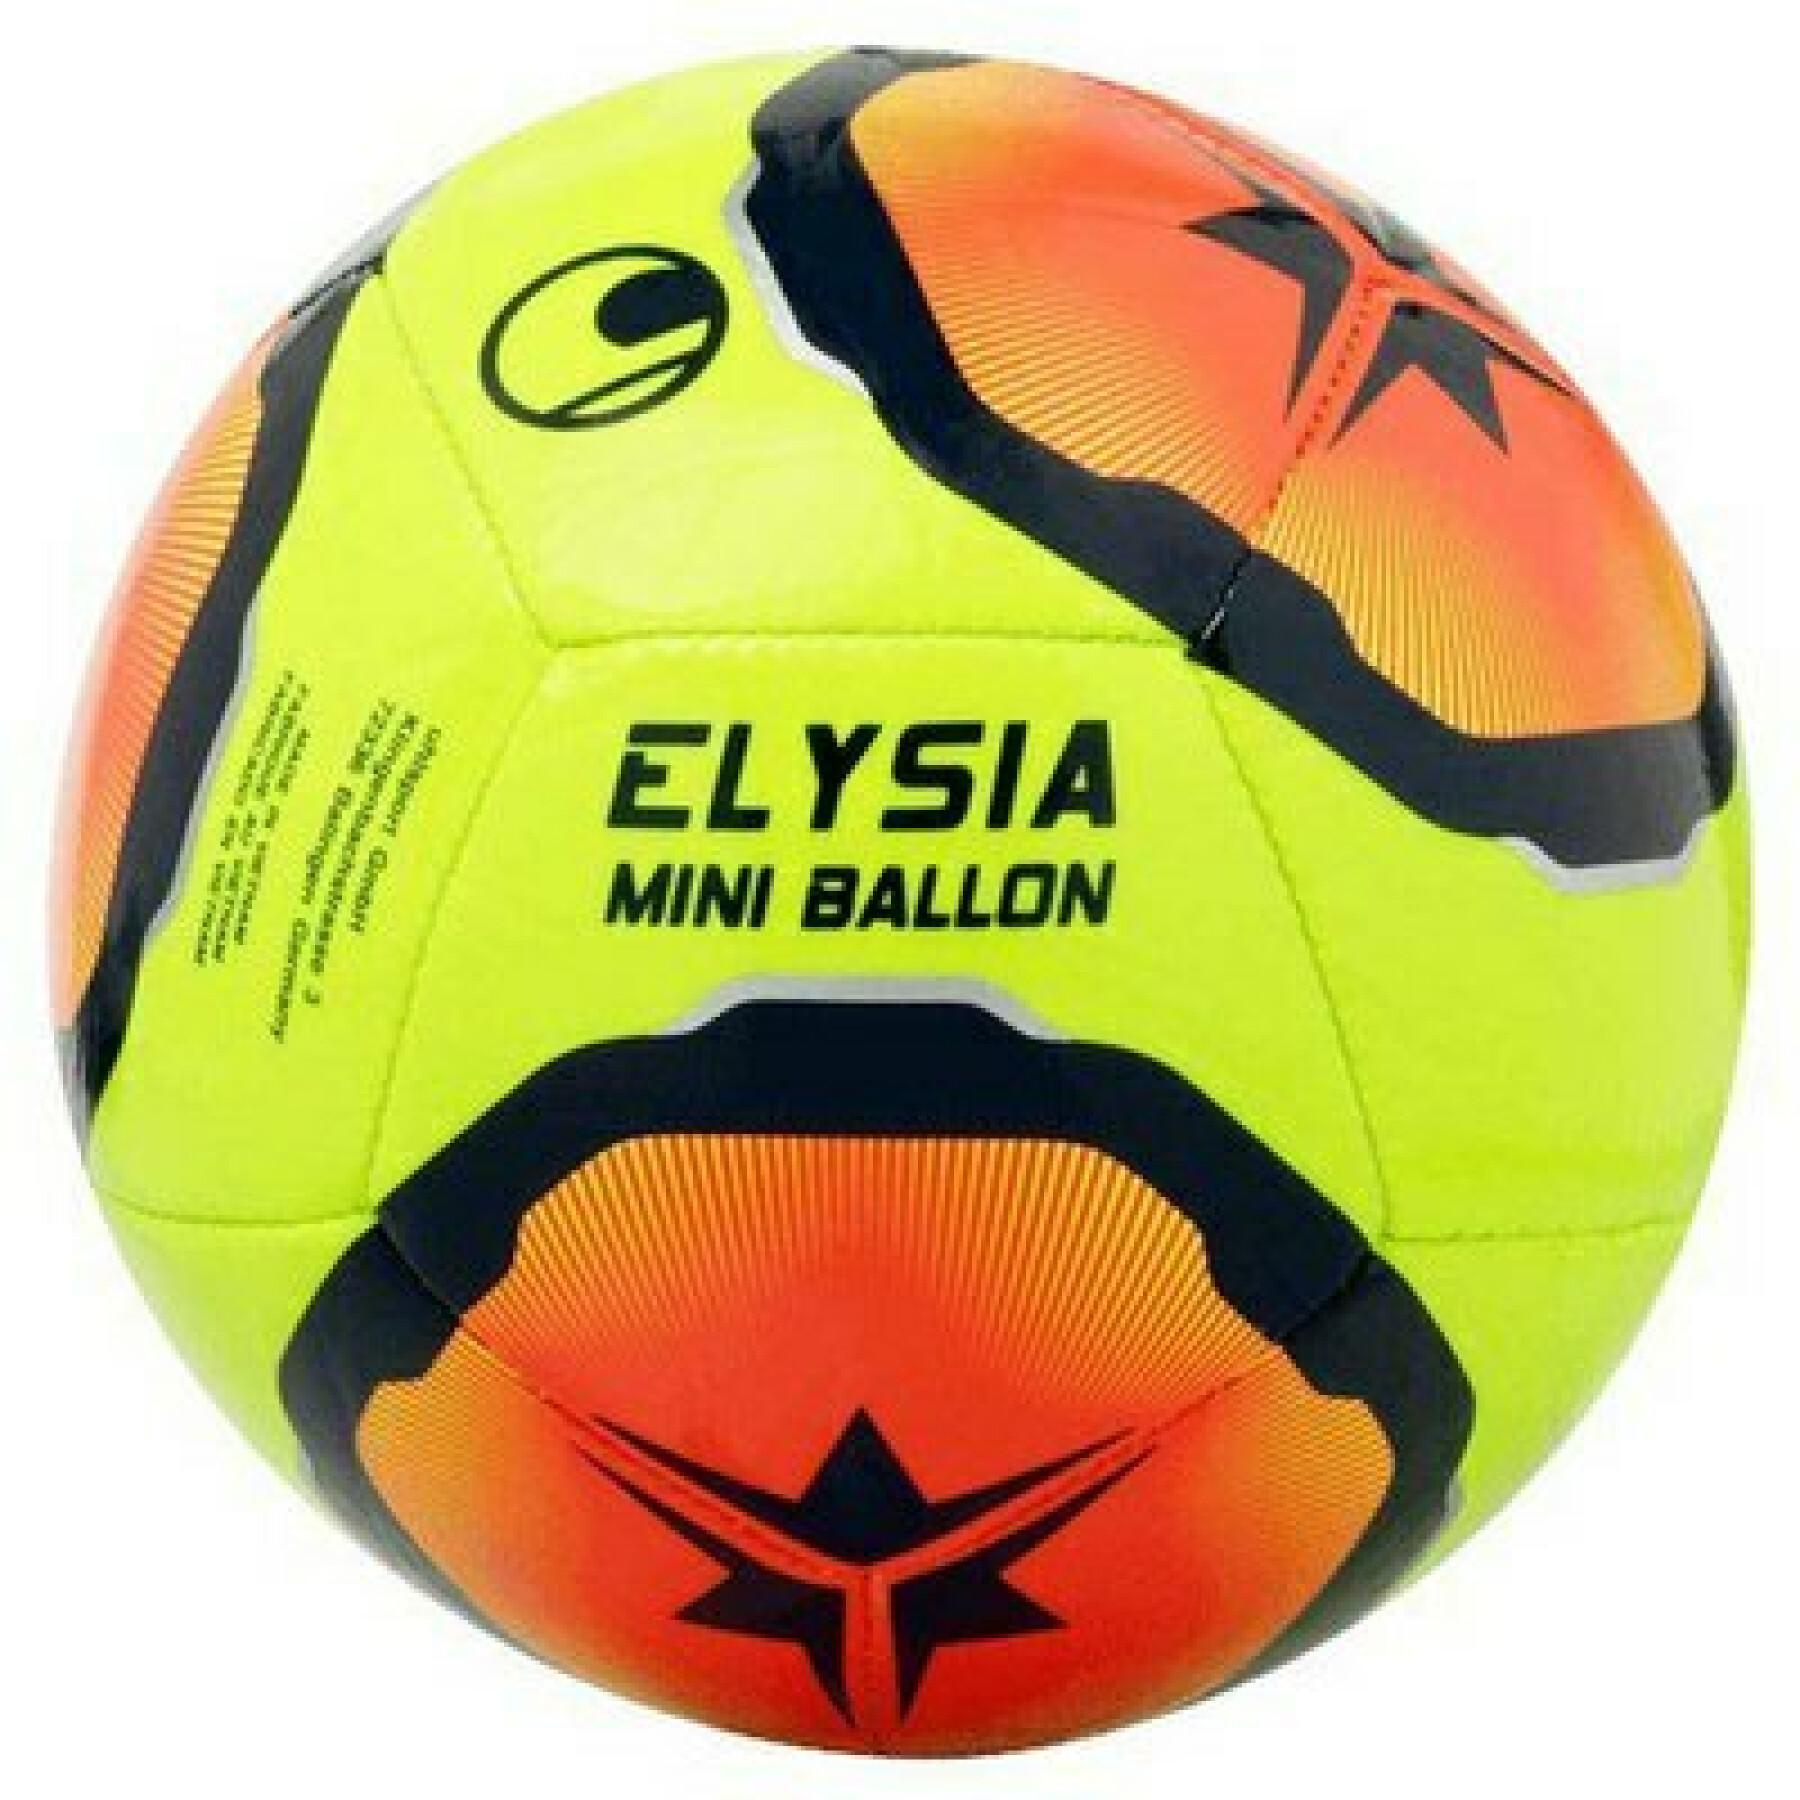 Mini-Ballon Uhlsport Elysia